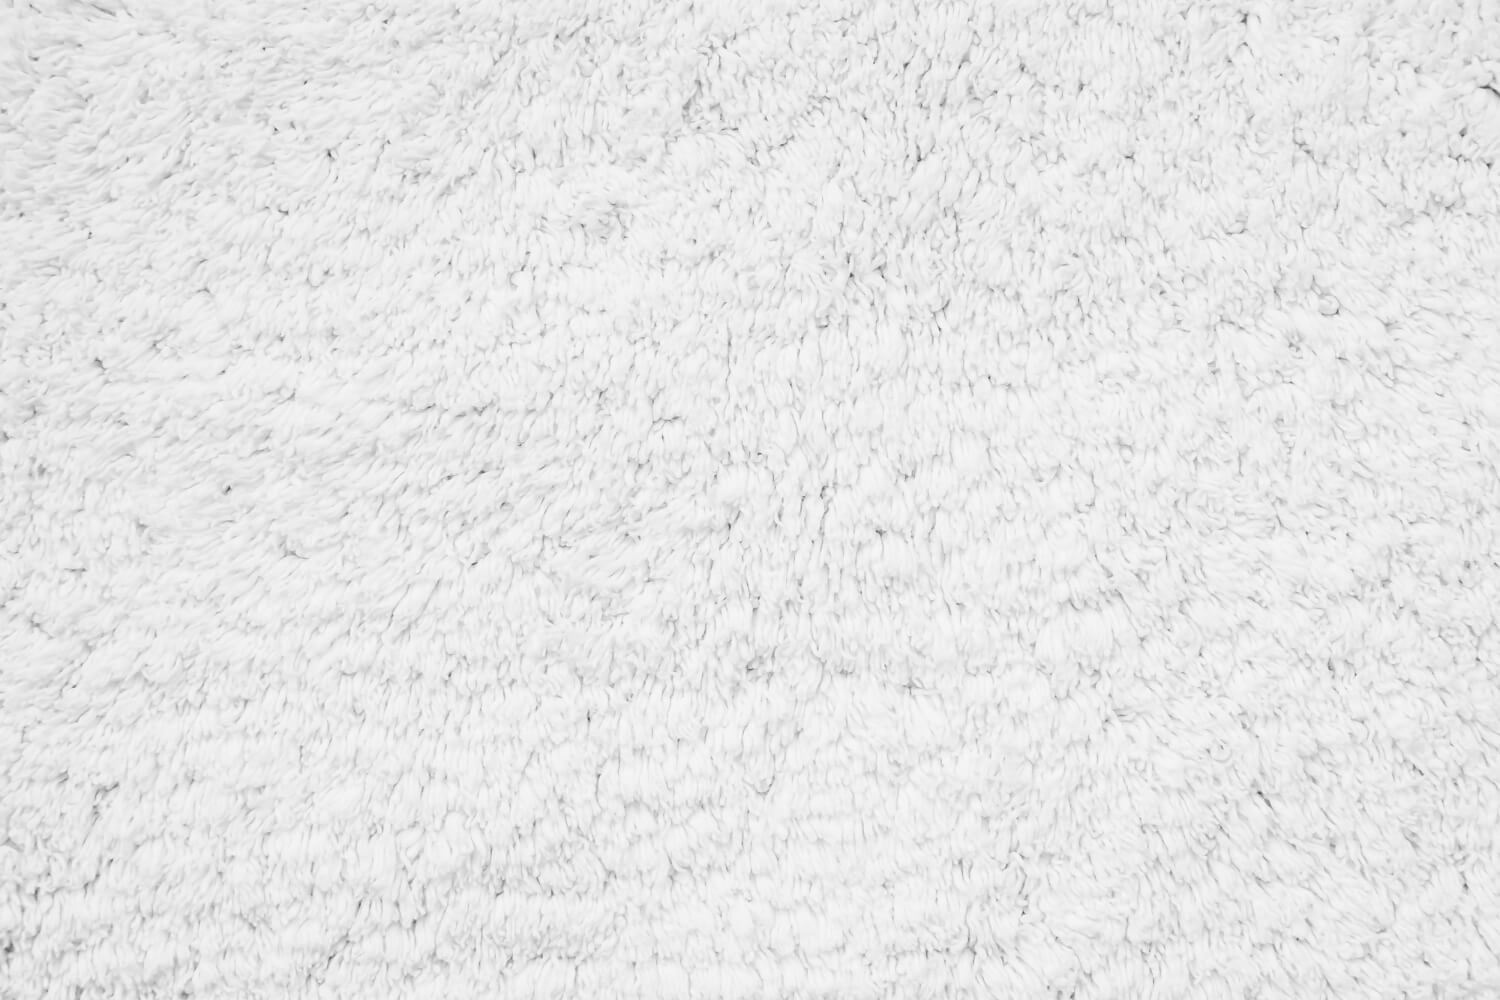 white cotton carpet texture surface close up